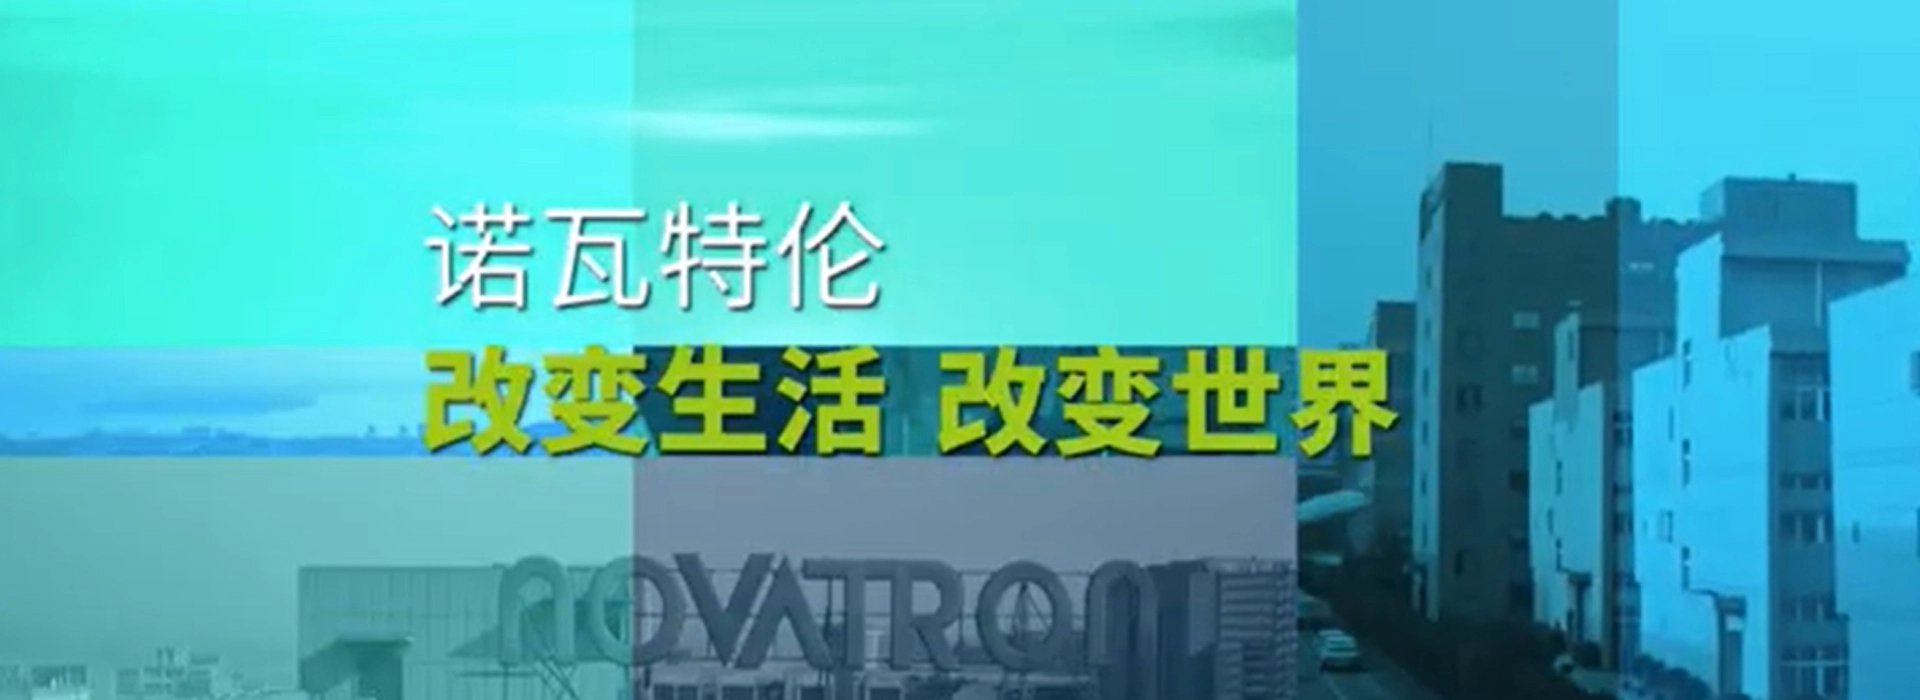 วิดีโอโปรไฟล์บริษัท novatron-จีน